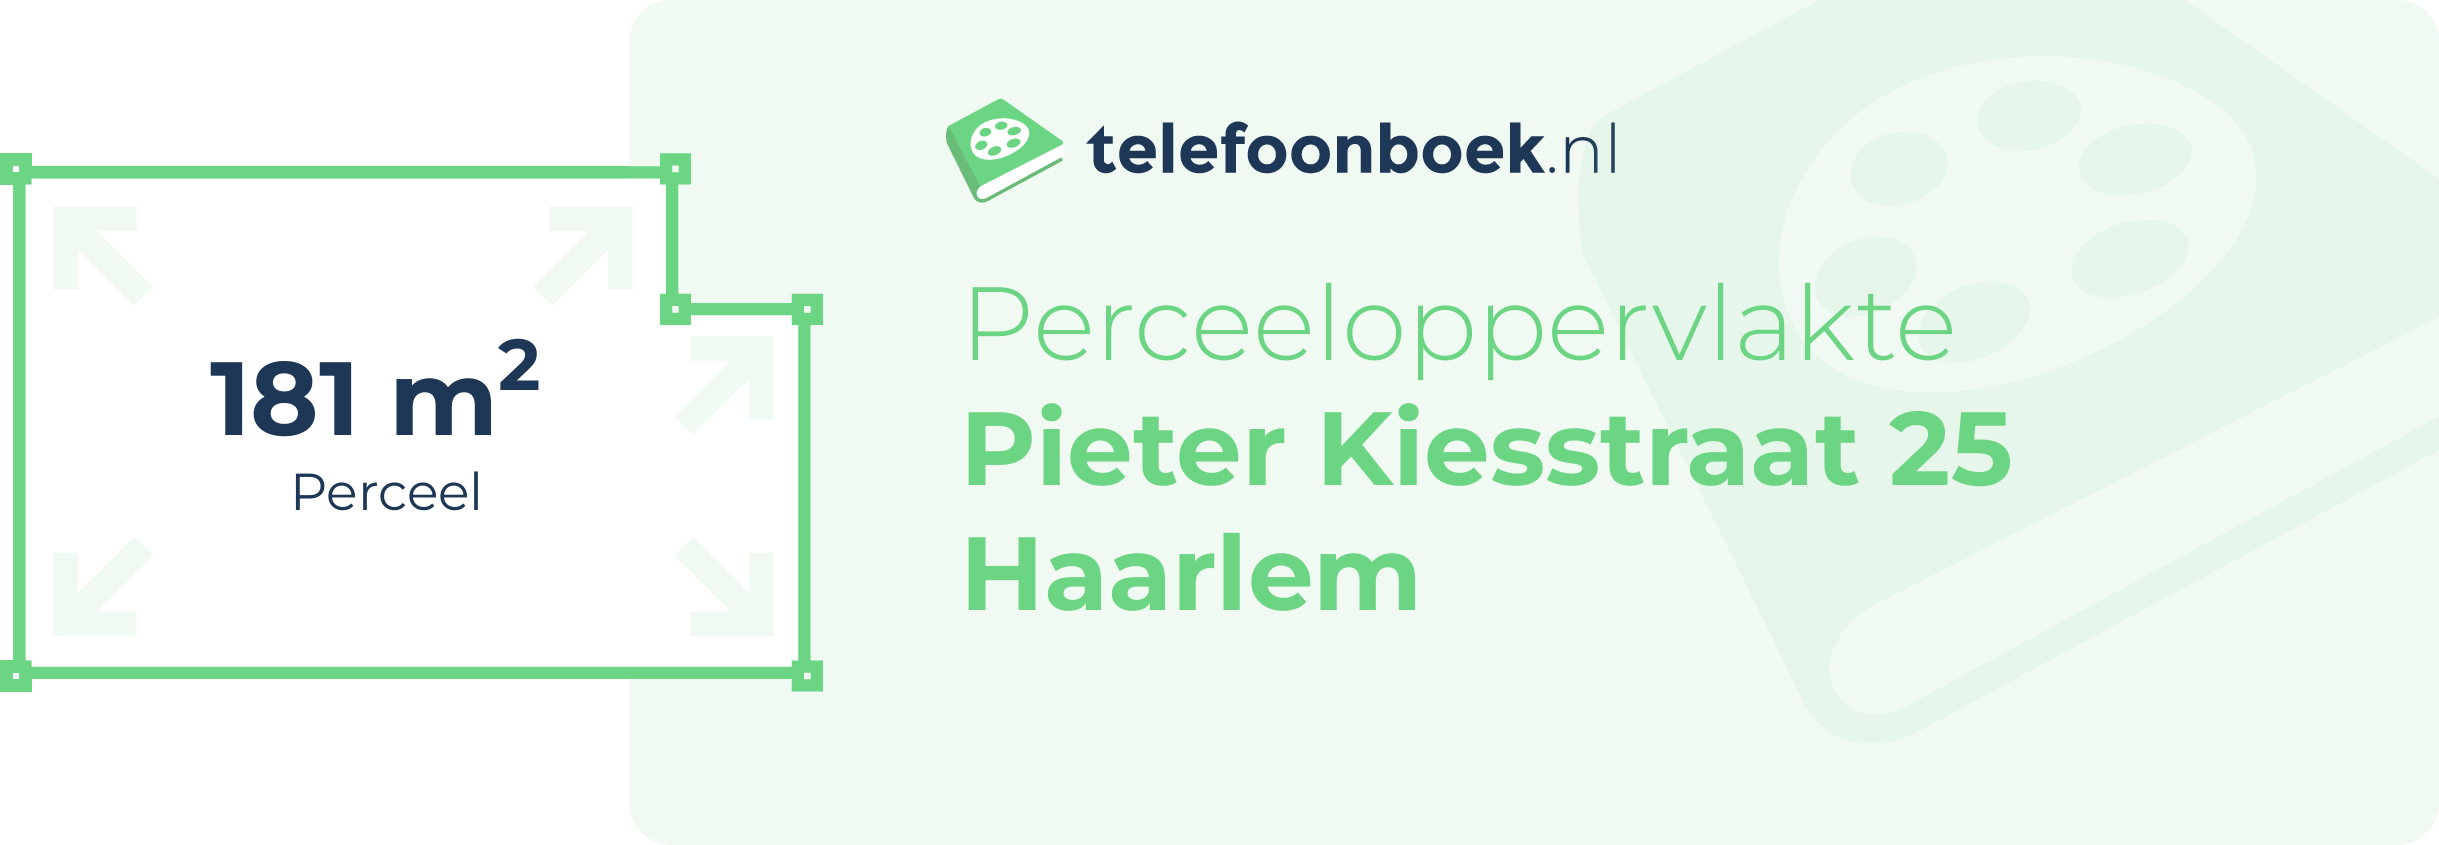 Perceeloppervlakte Pieter Kiesstraat 25 Haarlem